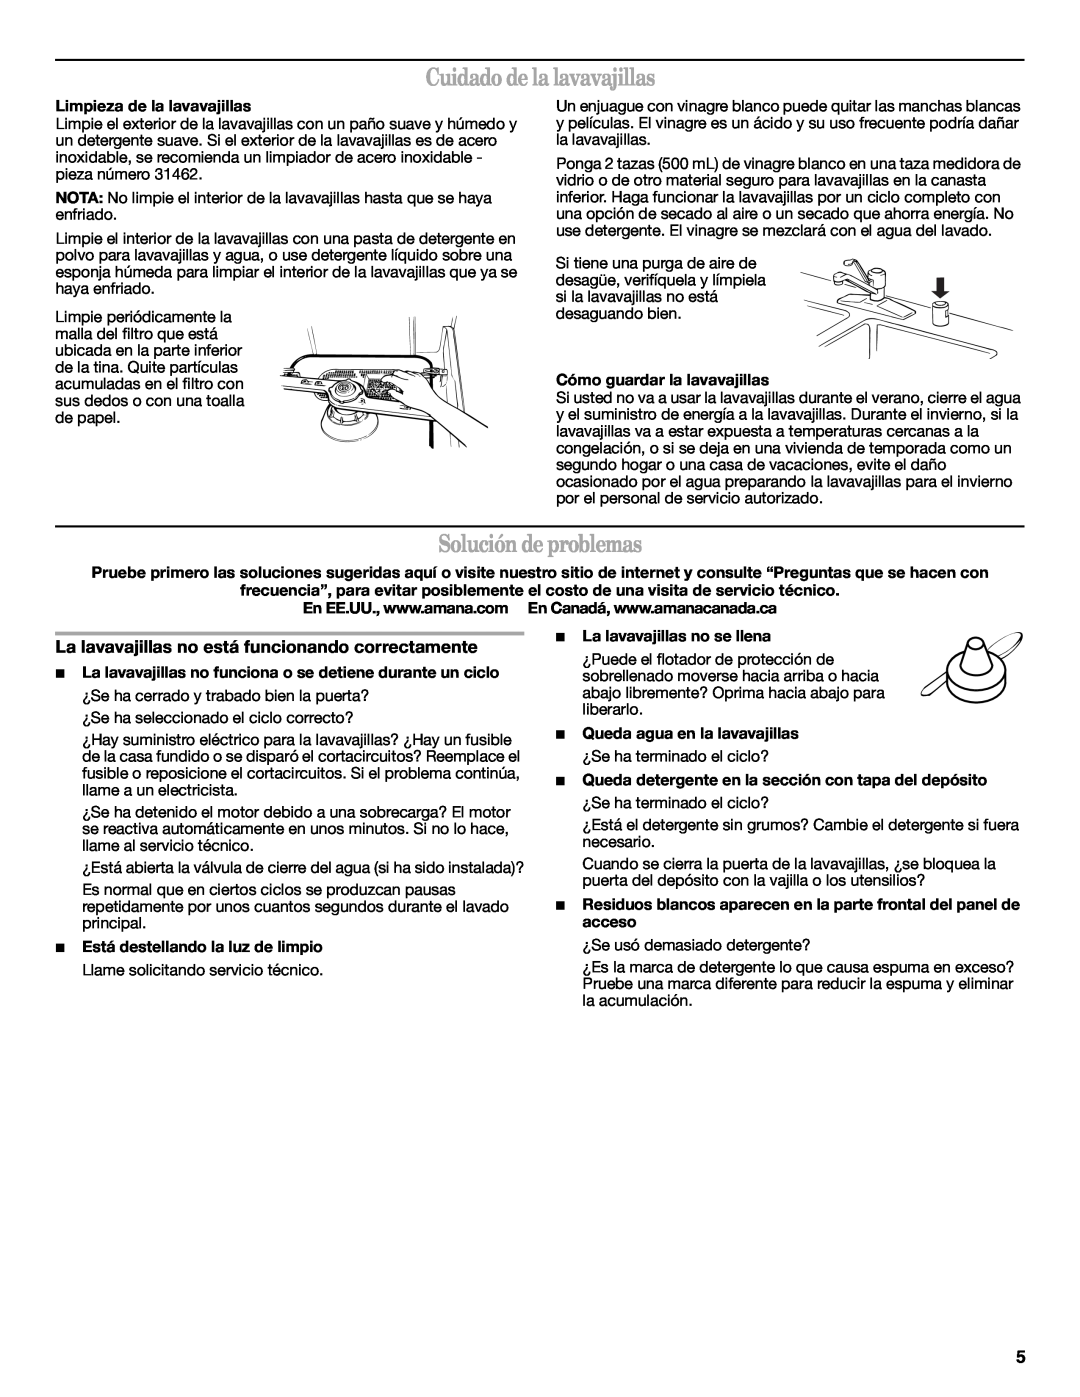 Amana W10254855A manual Cuidado de la lavavajillas, Solución de problemas, Limpieza de la lavavajillas 